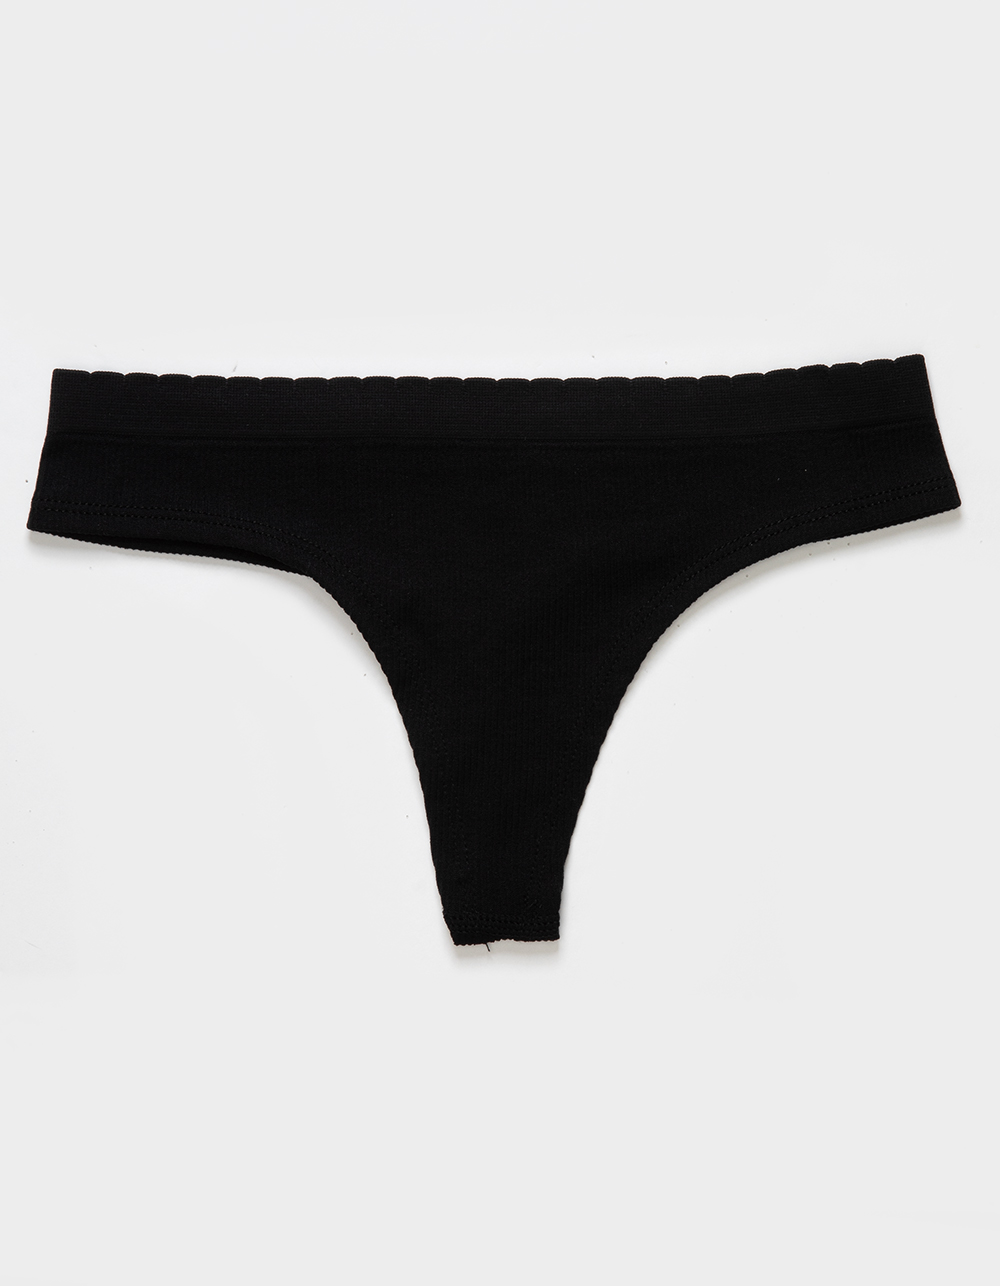 Duchesse Panty Liners - Thong & Briefs, Black, 28 Pcs - oh feliz